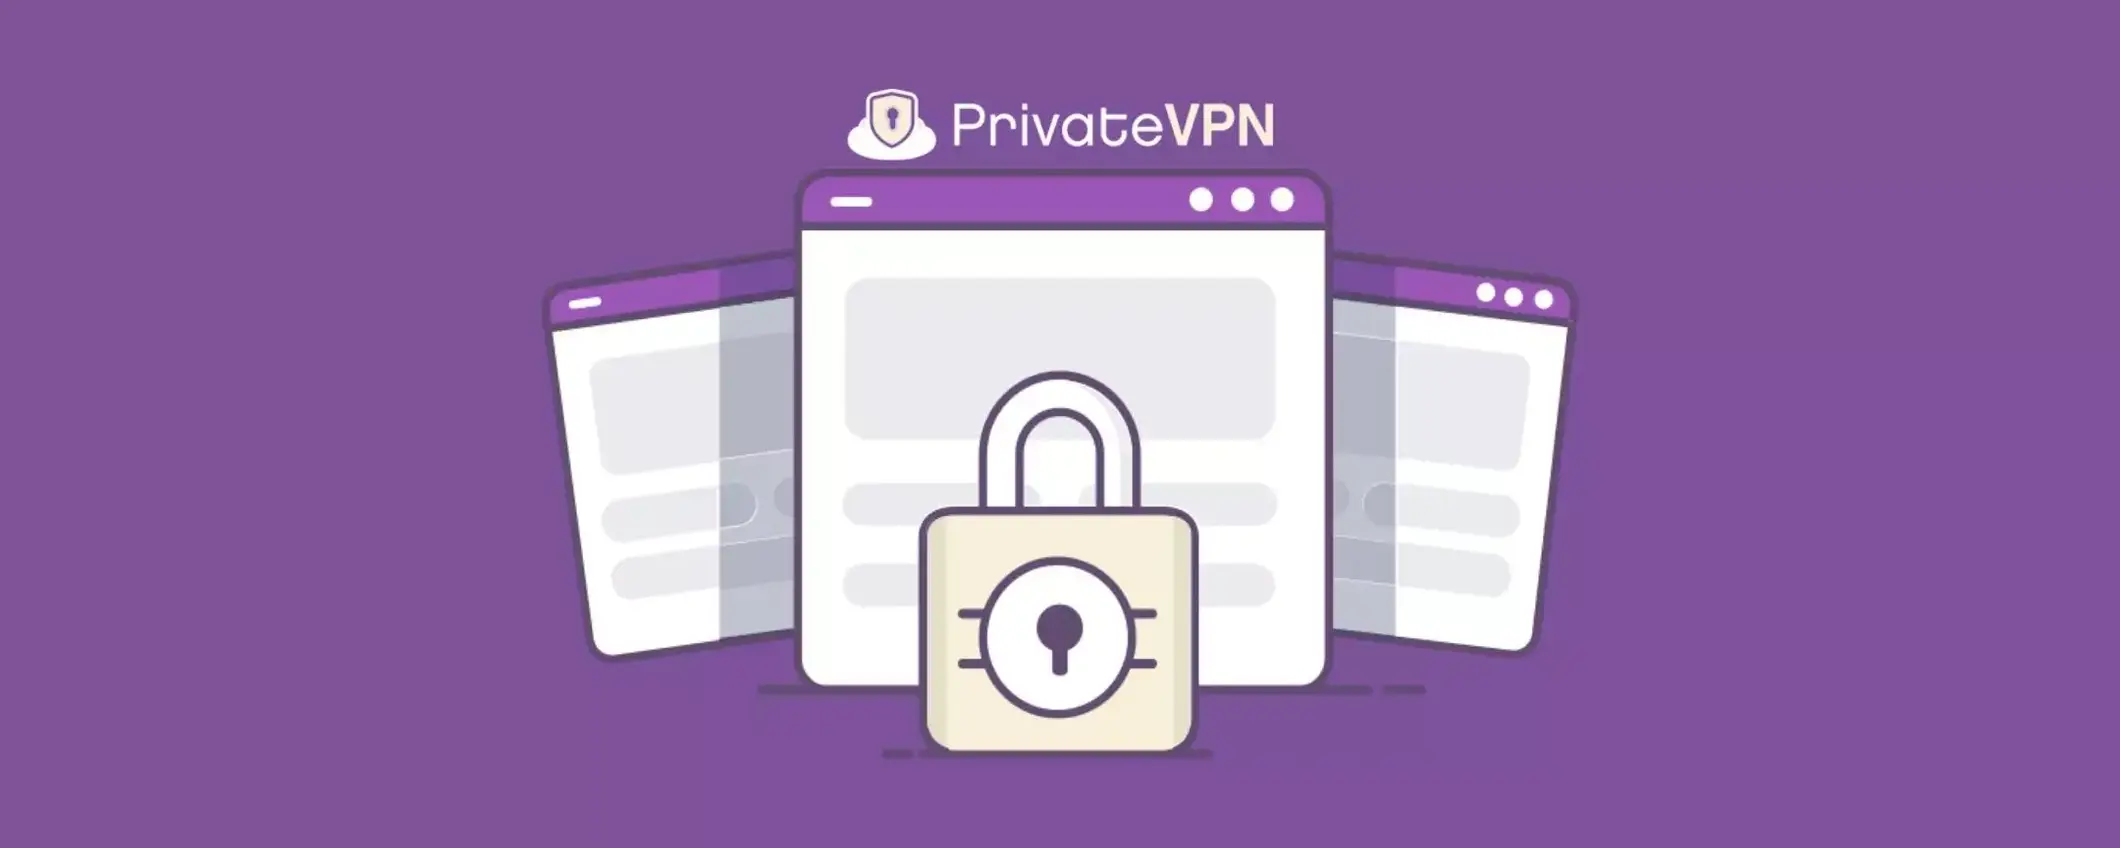 PrivateVPN: la scelta ideale per una connessione sicura su Windows, ora in promozione